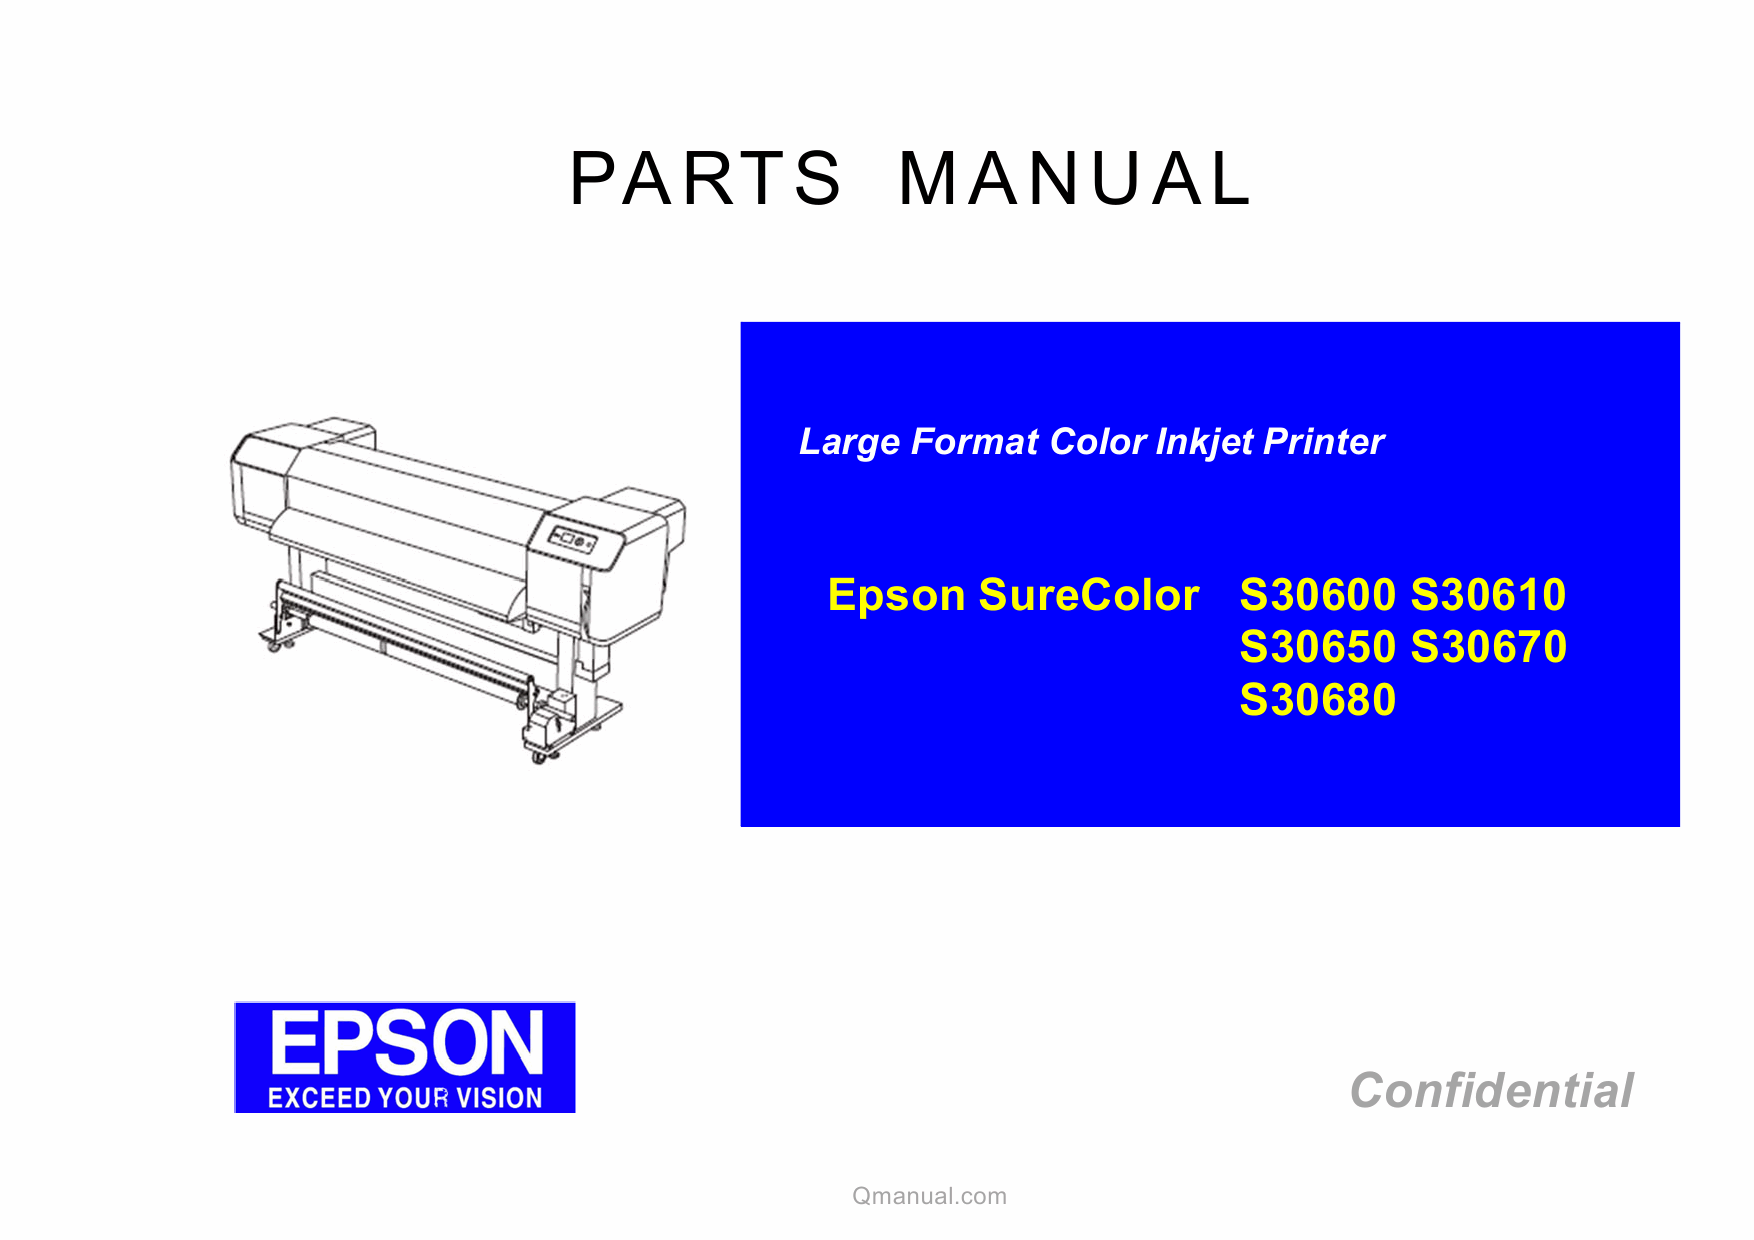 EPSON SureColor S30600 S30610 S30650 S30670 S30680 Parts Manual-1